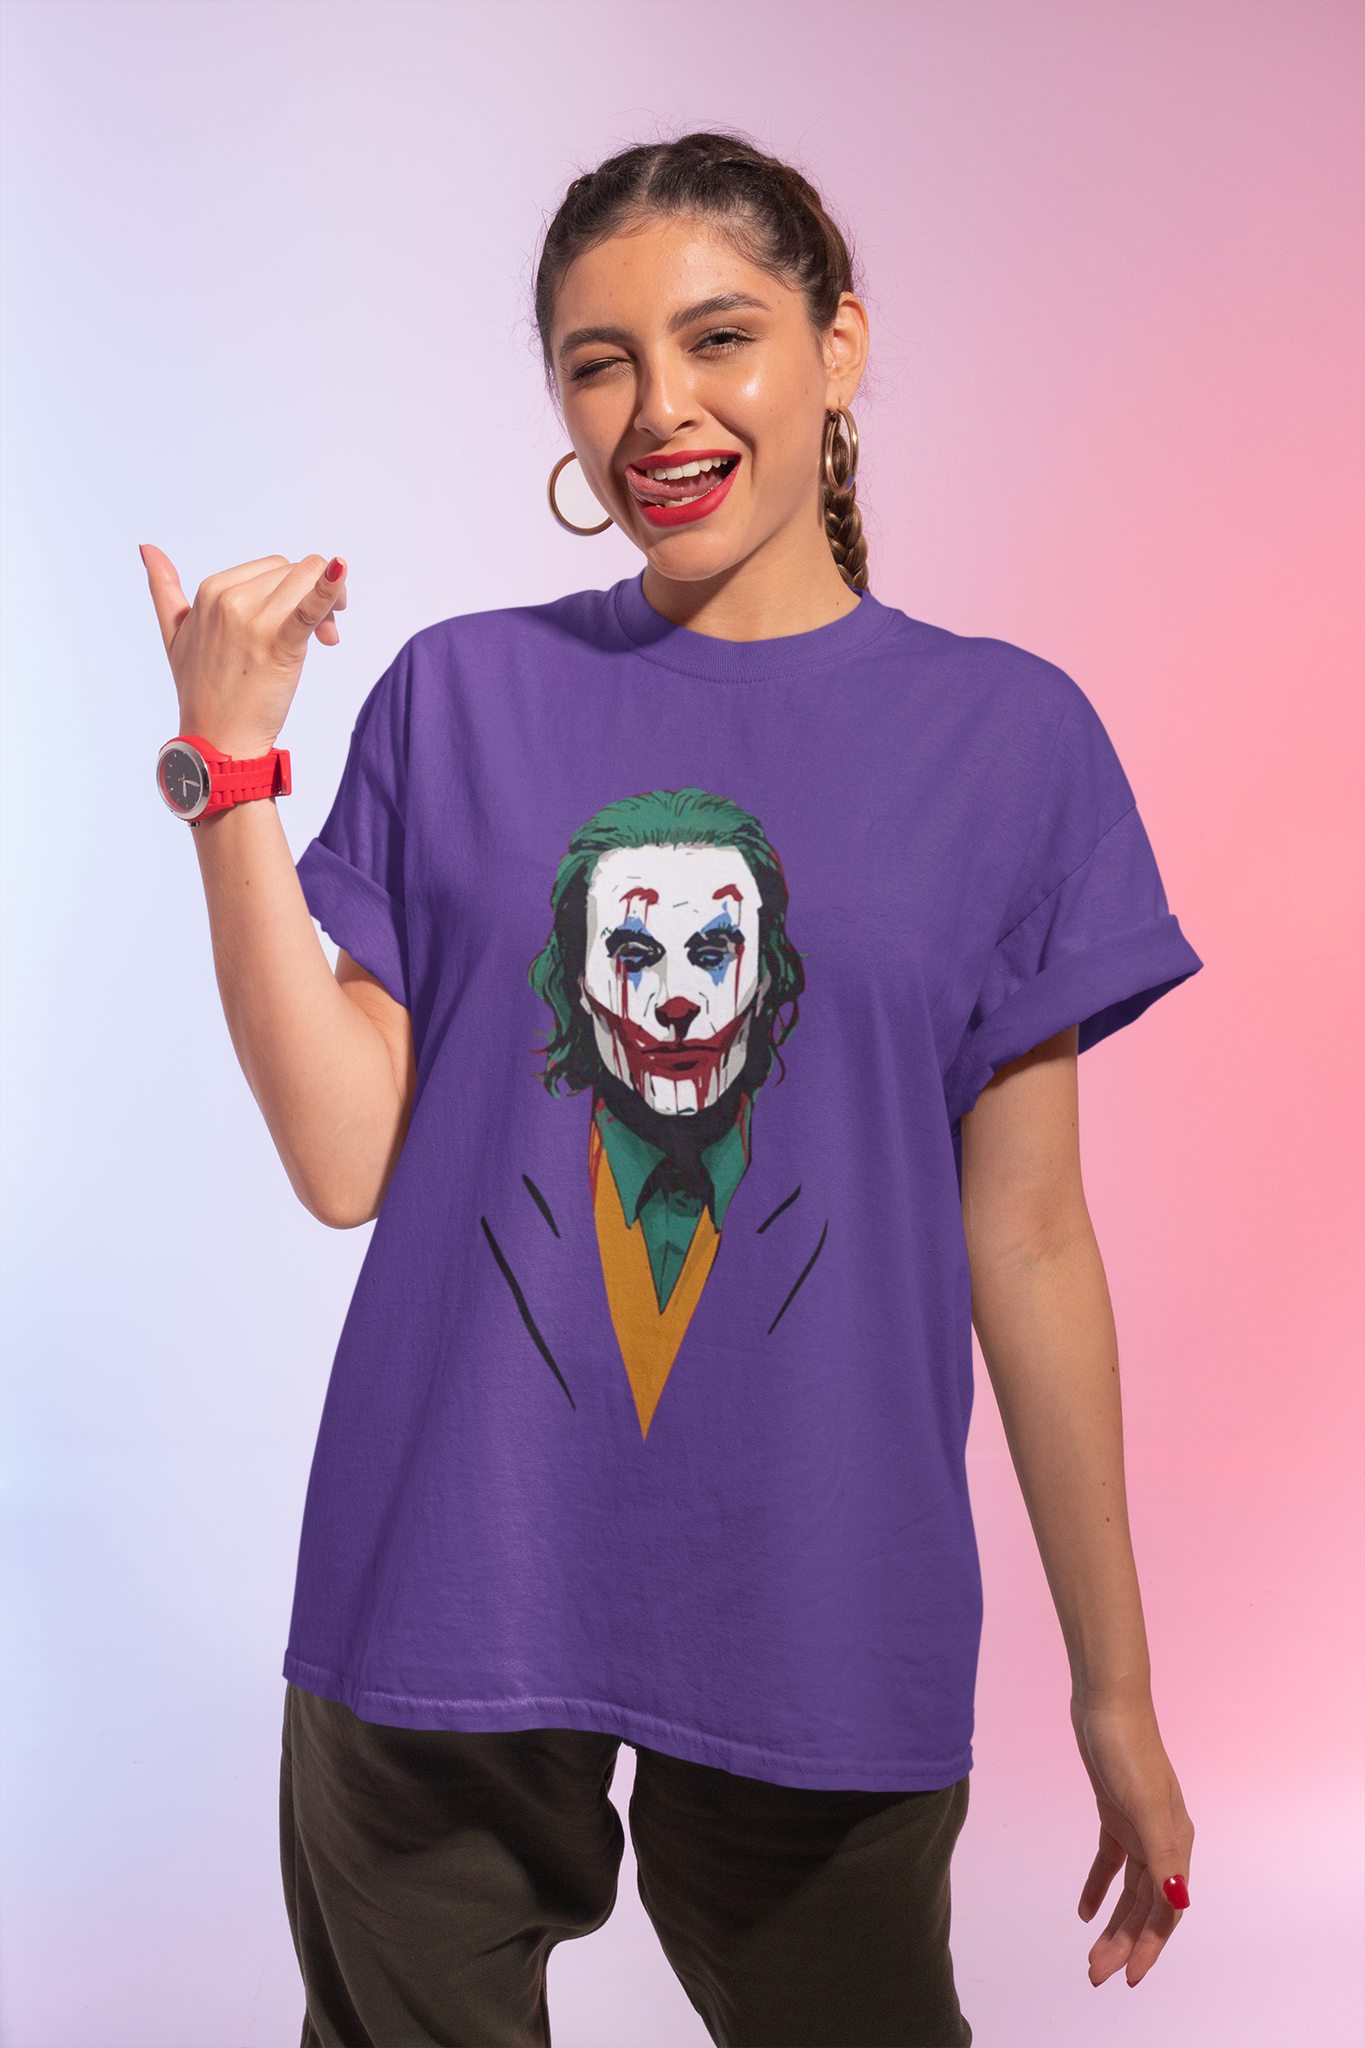 Joker T Shirt, Joker The Comedian T Shirt, Halloween Gifts